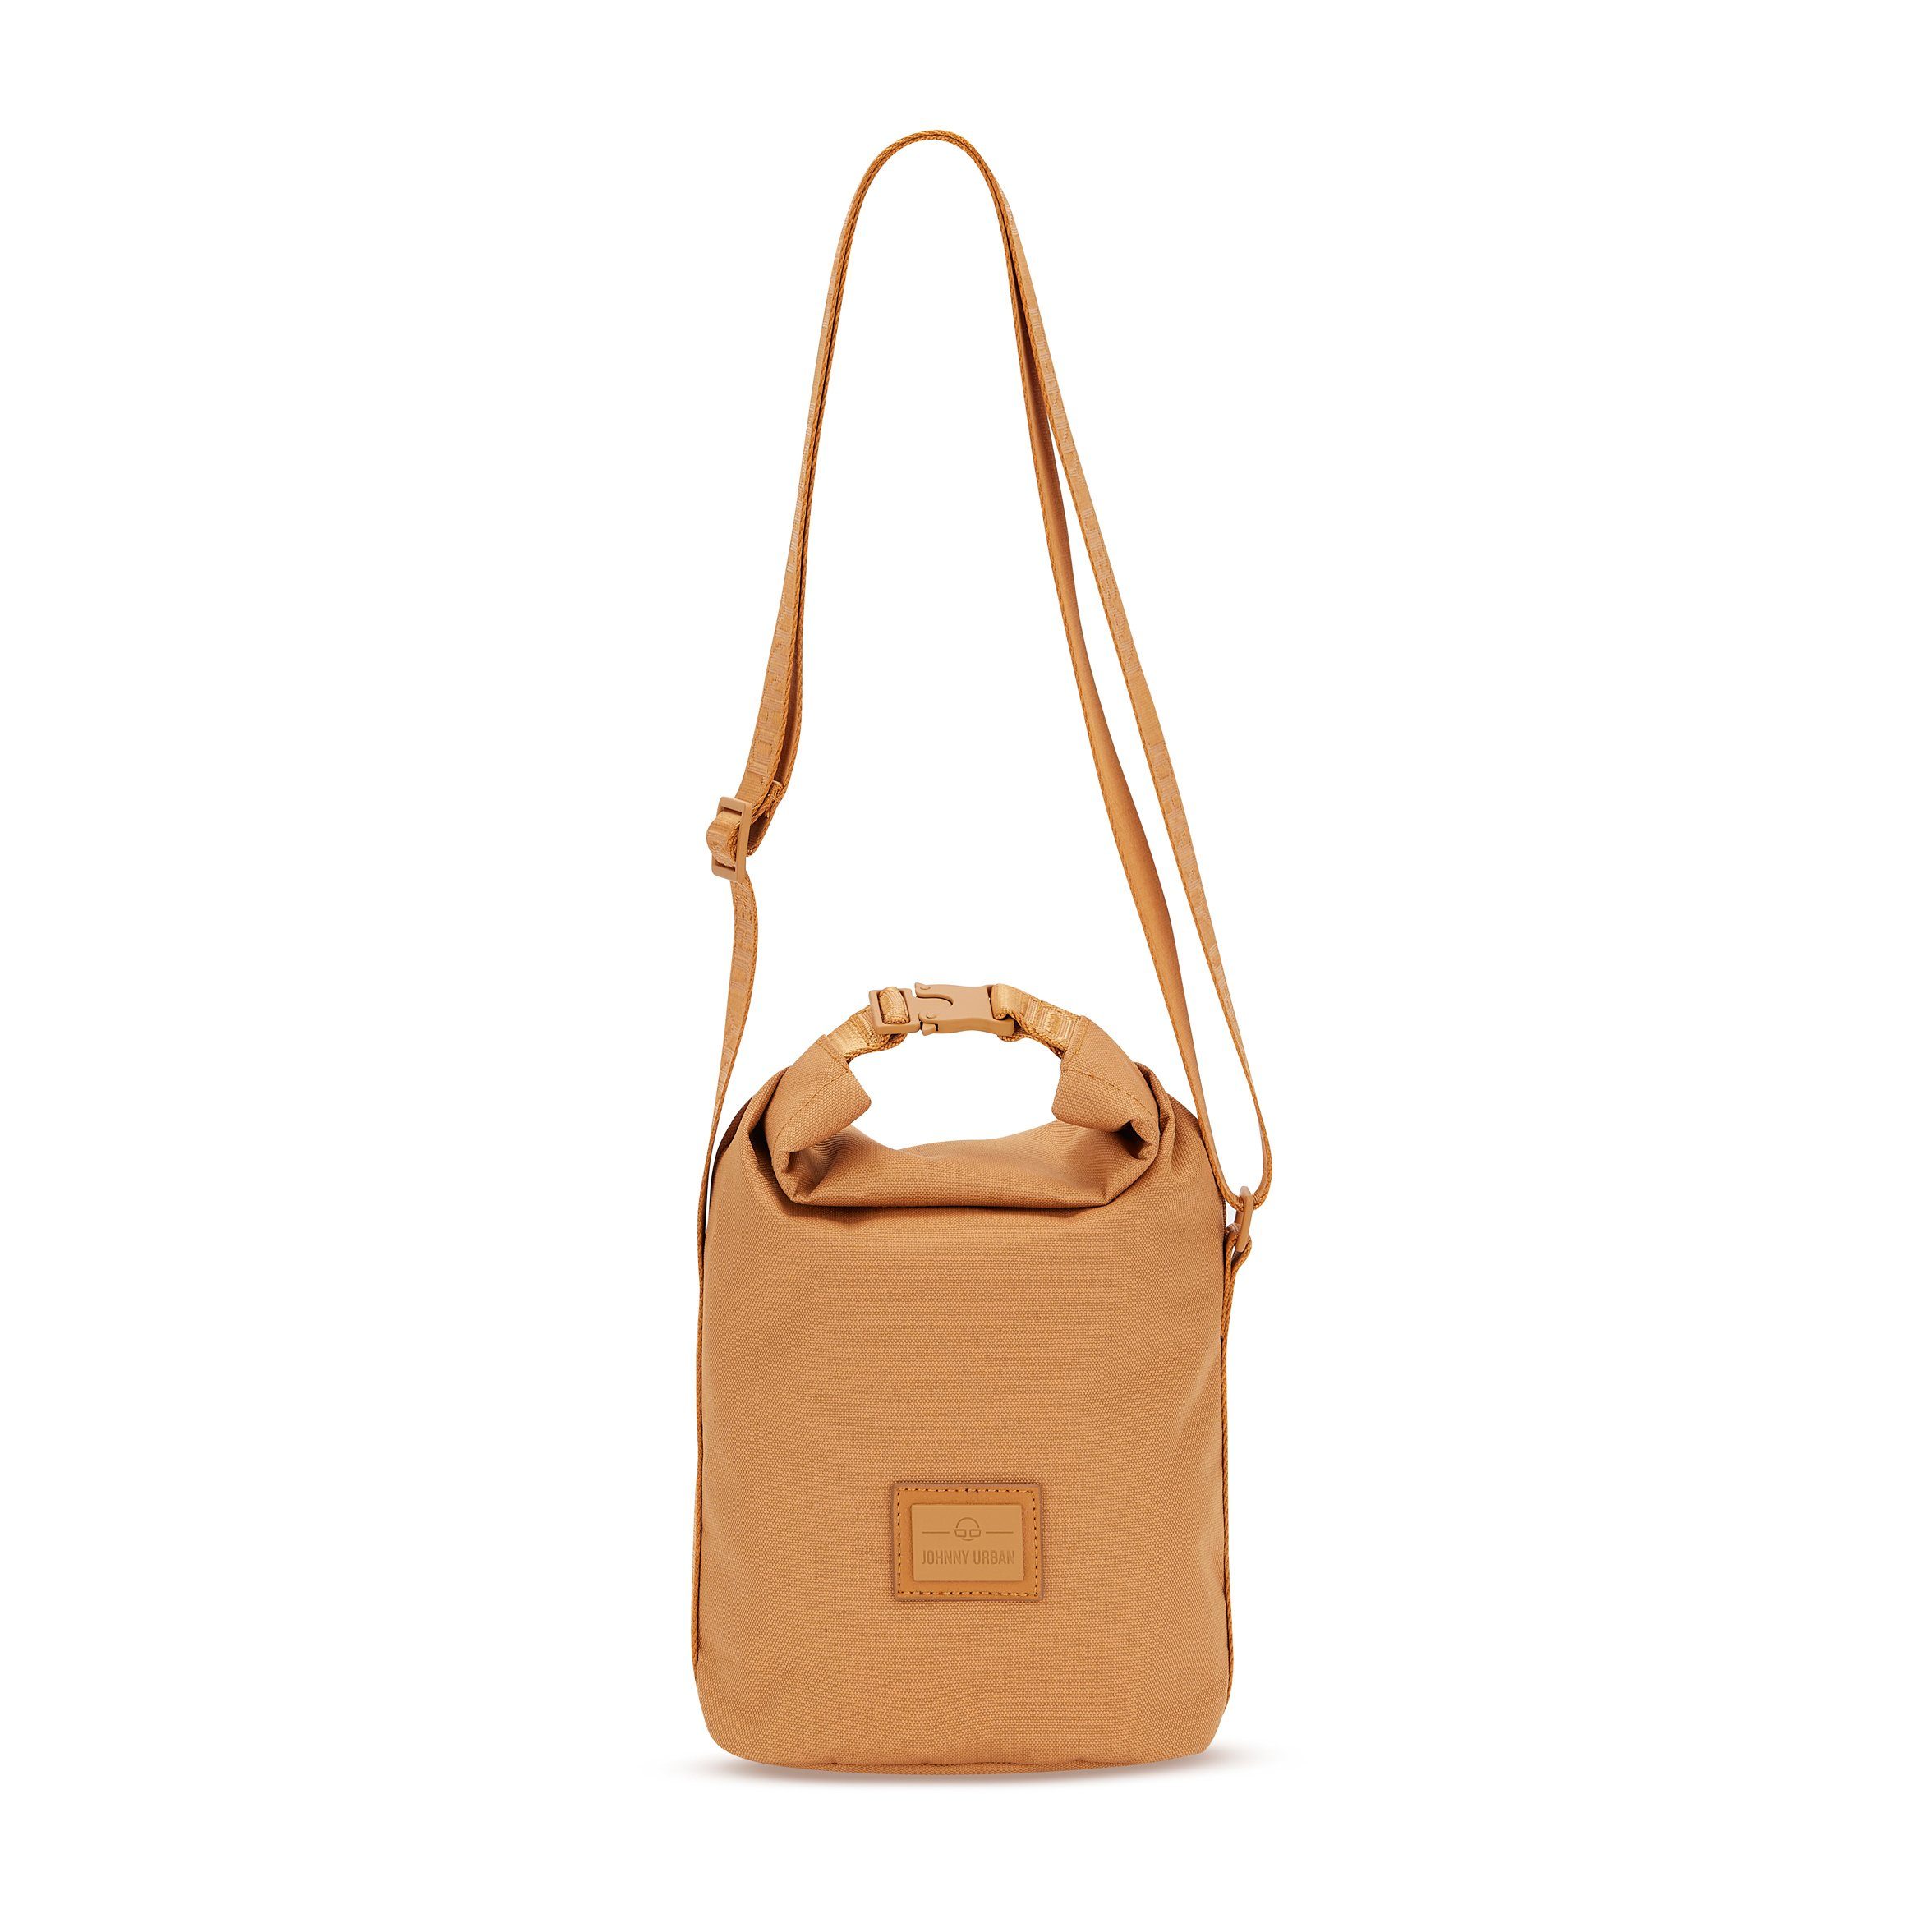 Johnny Urban Handtasche RUE Handtasche Damen, Stylische Umhängetasche, Flexible Größe, Wasserabweisend Caramel